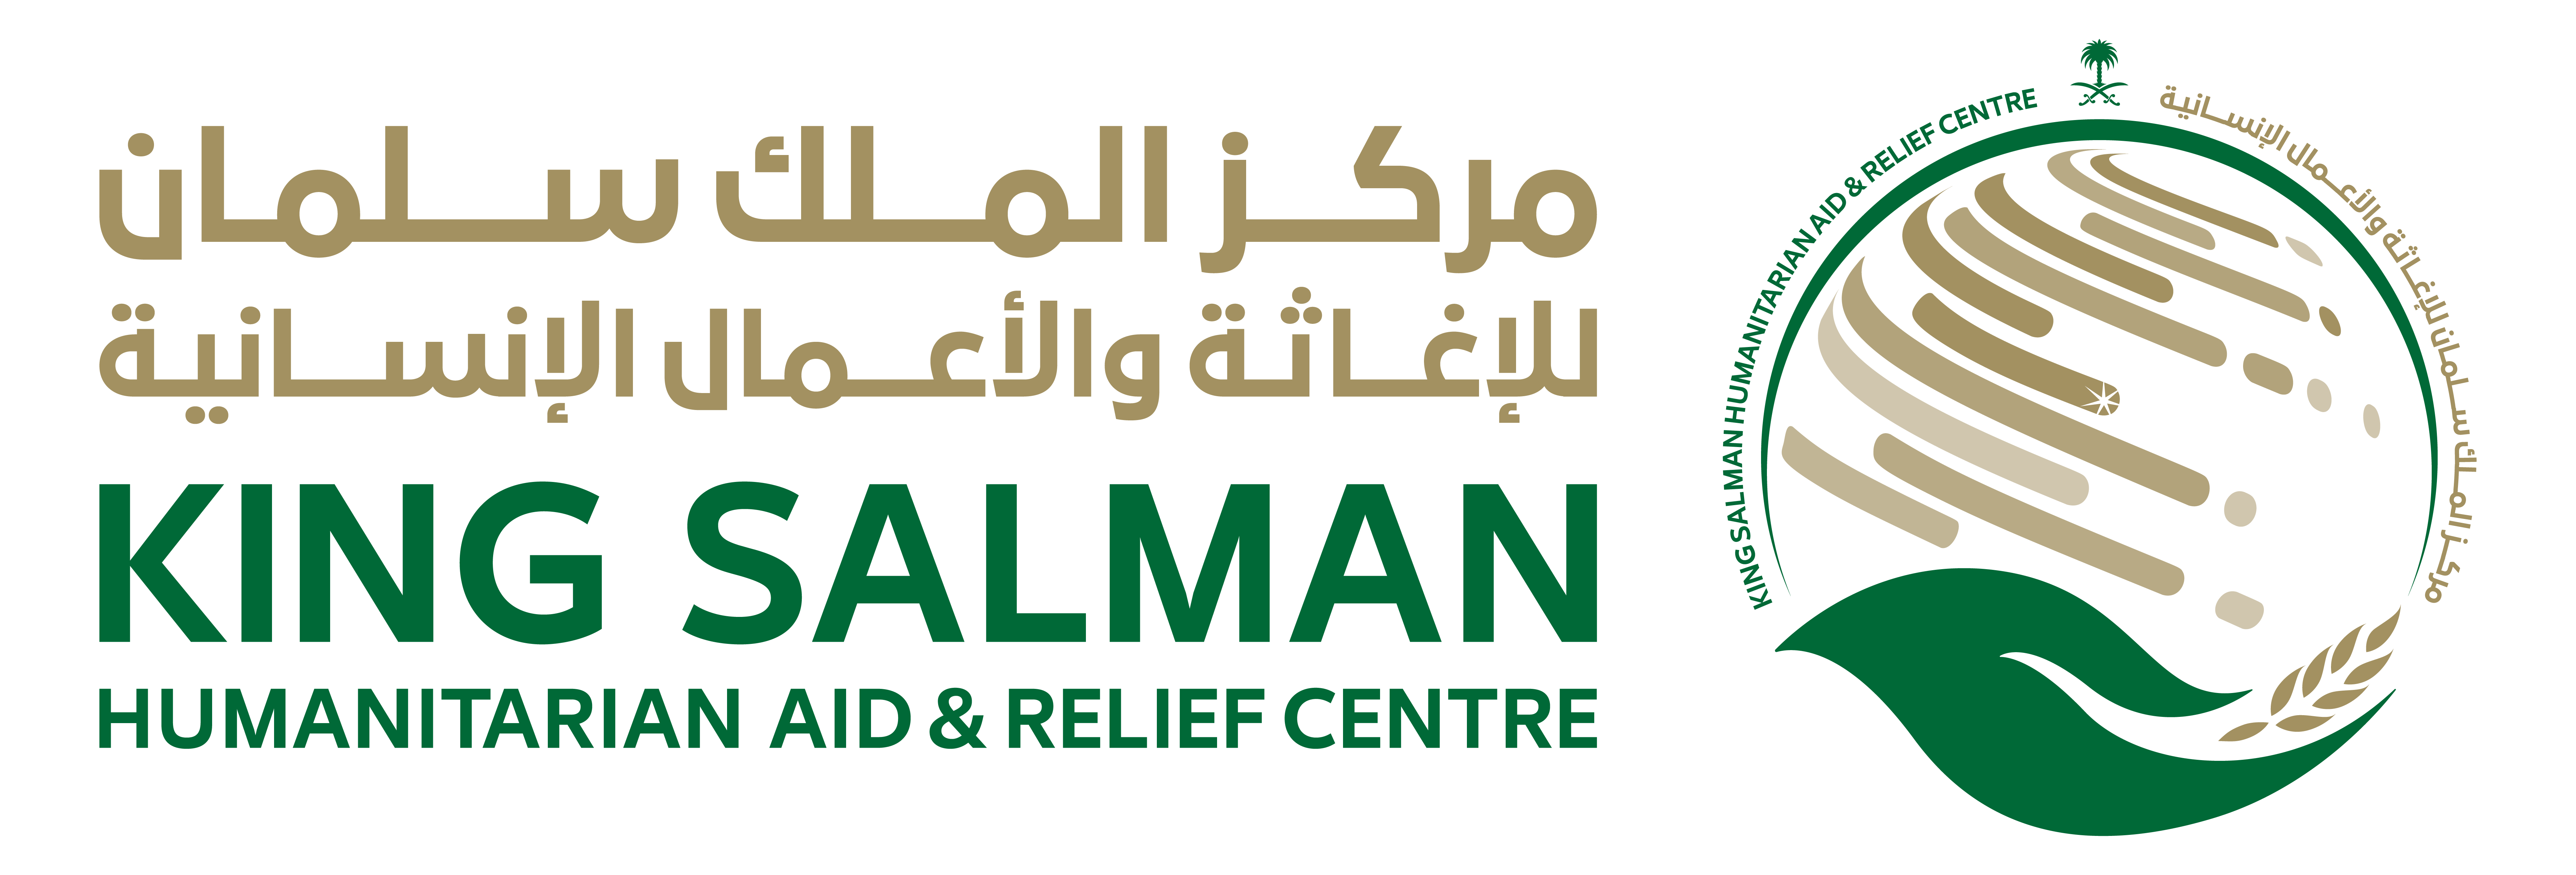   مركز الملك سلمان يواصل تقديم مساعداته في اليمن والصومال ومناطق اللاجئين بلبنان   